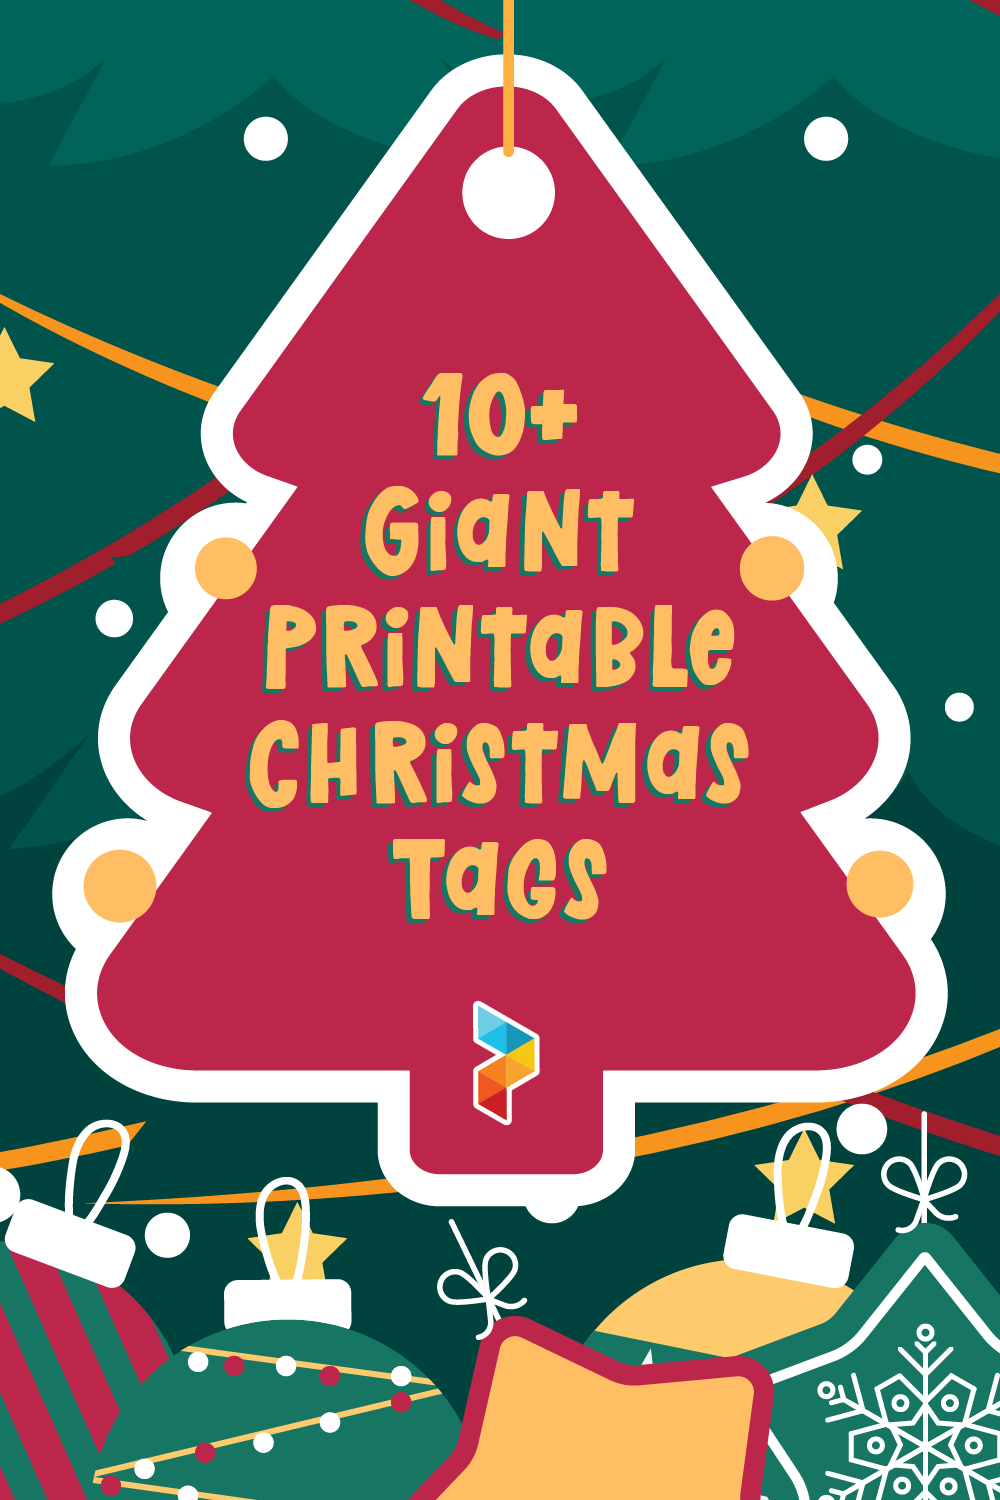 Giant Printable Christmas Tags